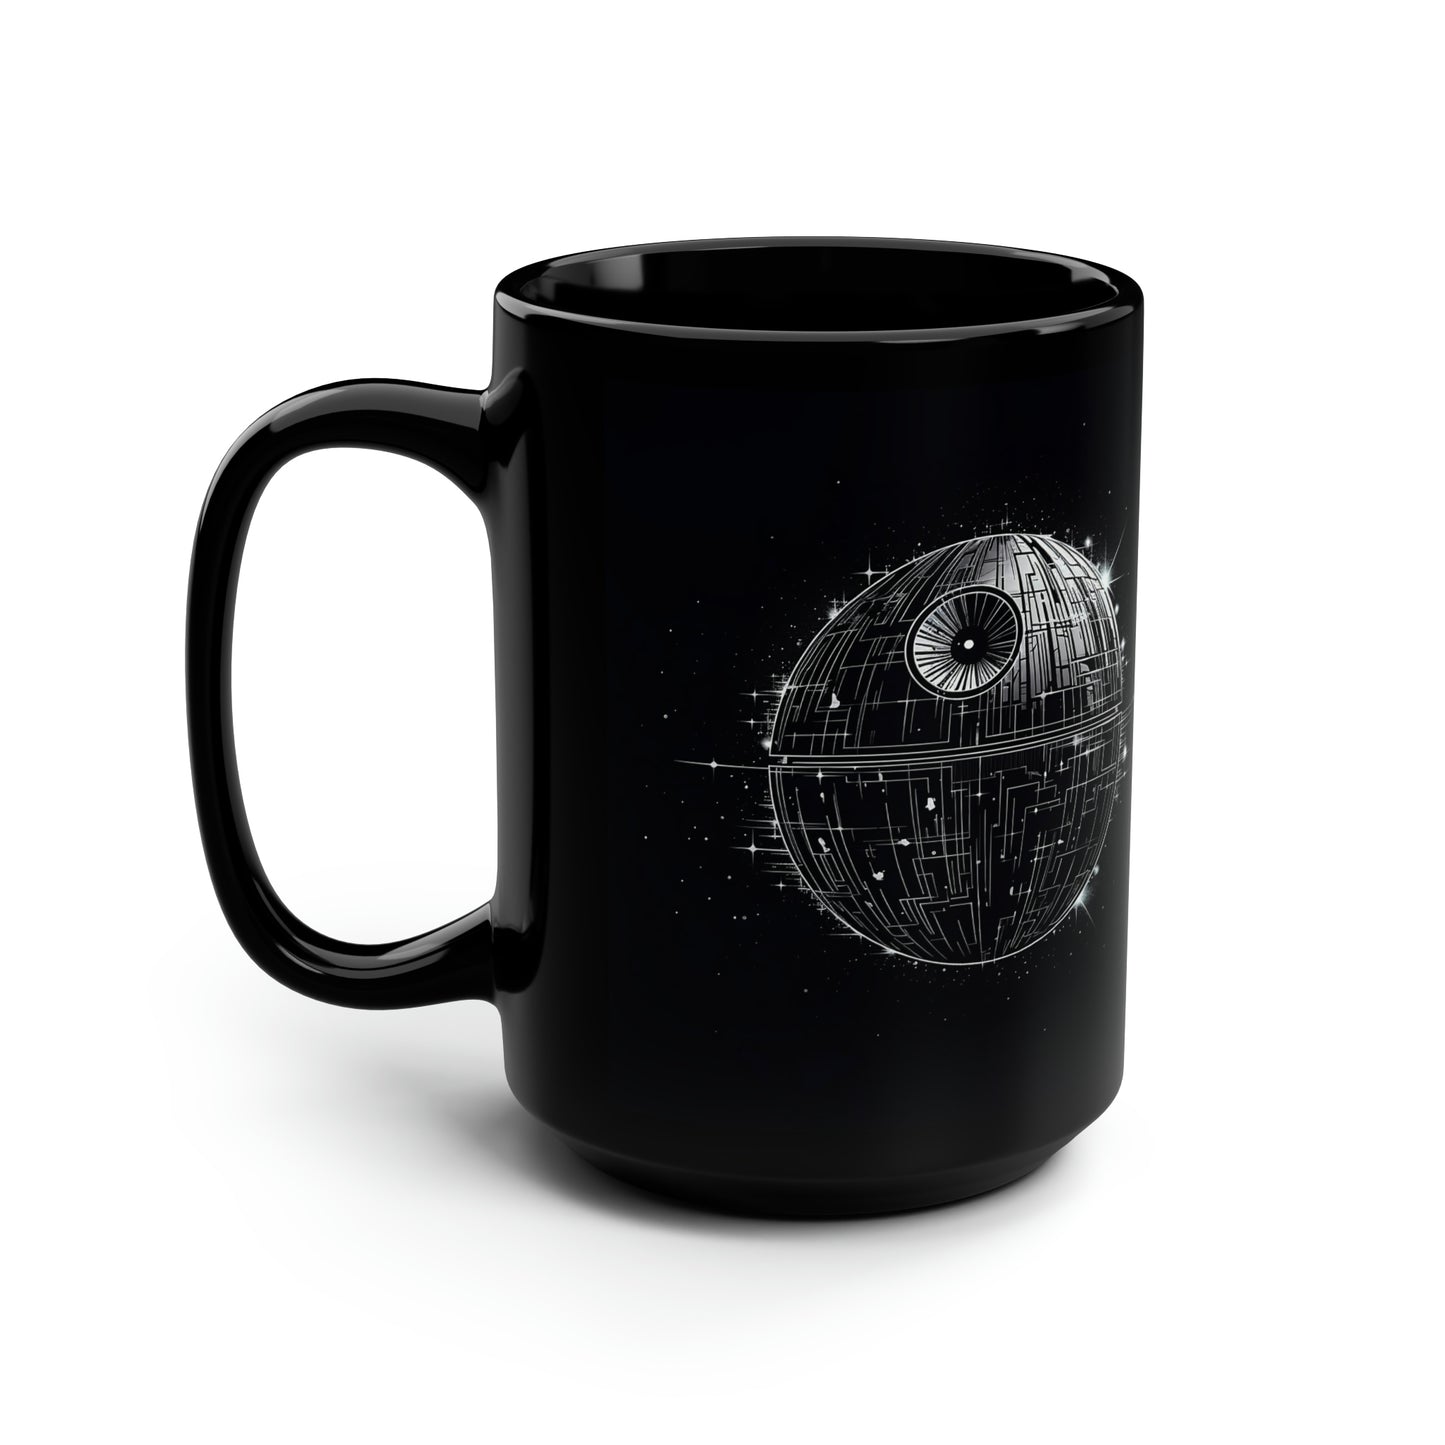 I Like My Coffee on the Dark Side - Death Star Mug